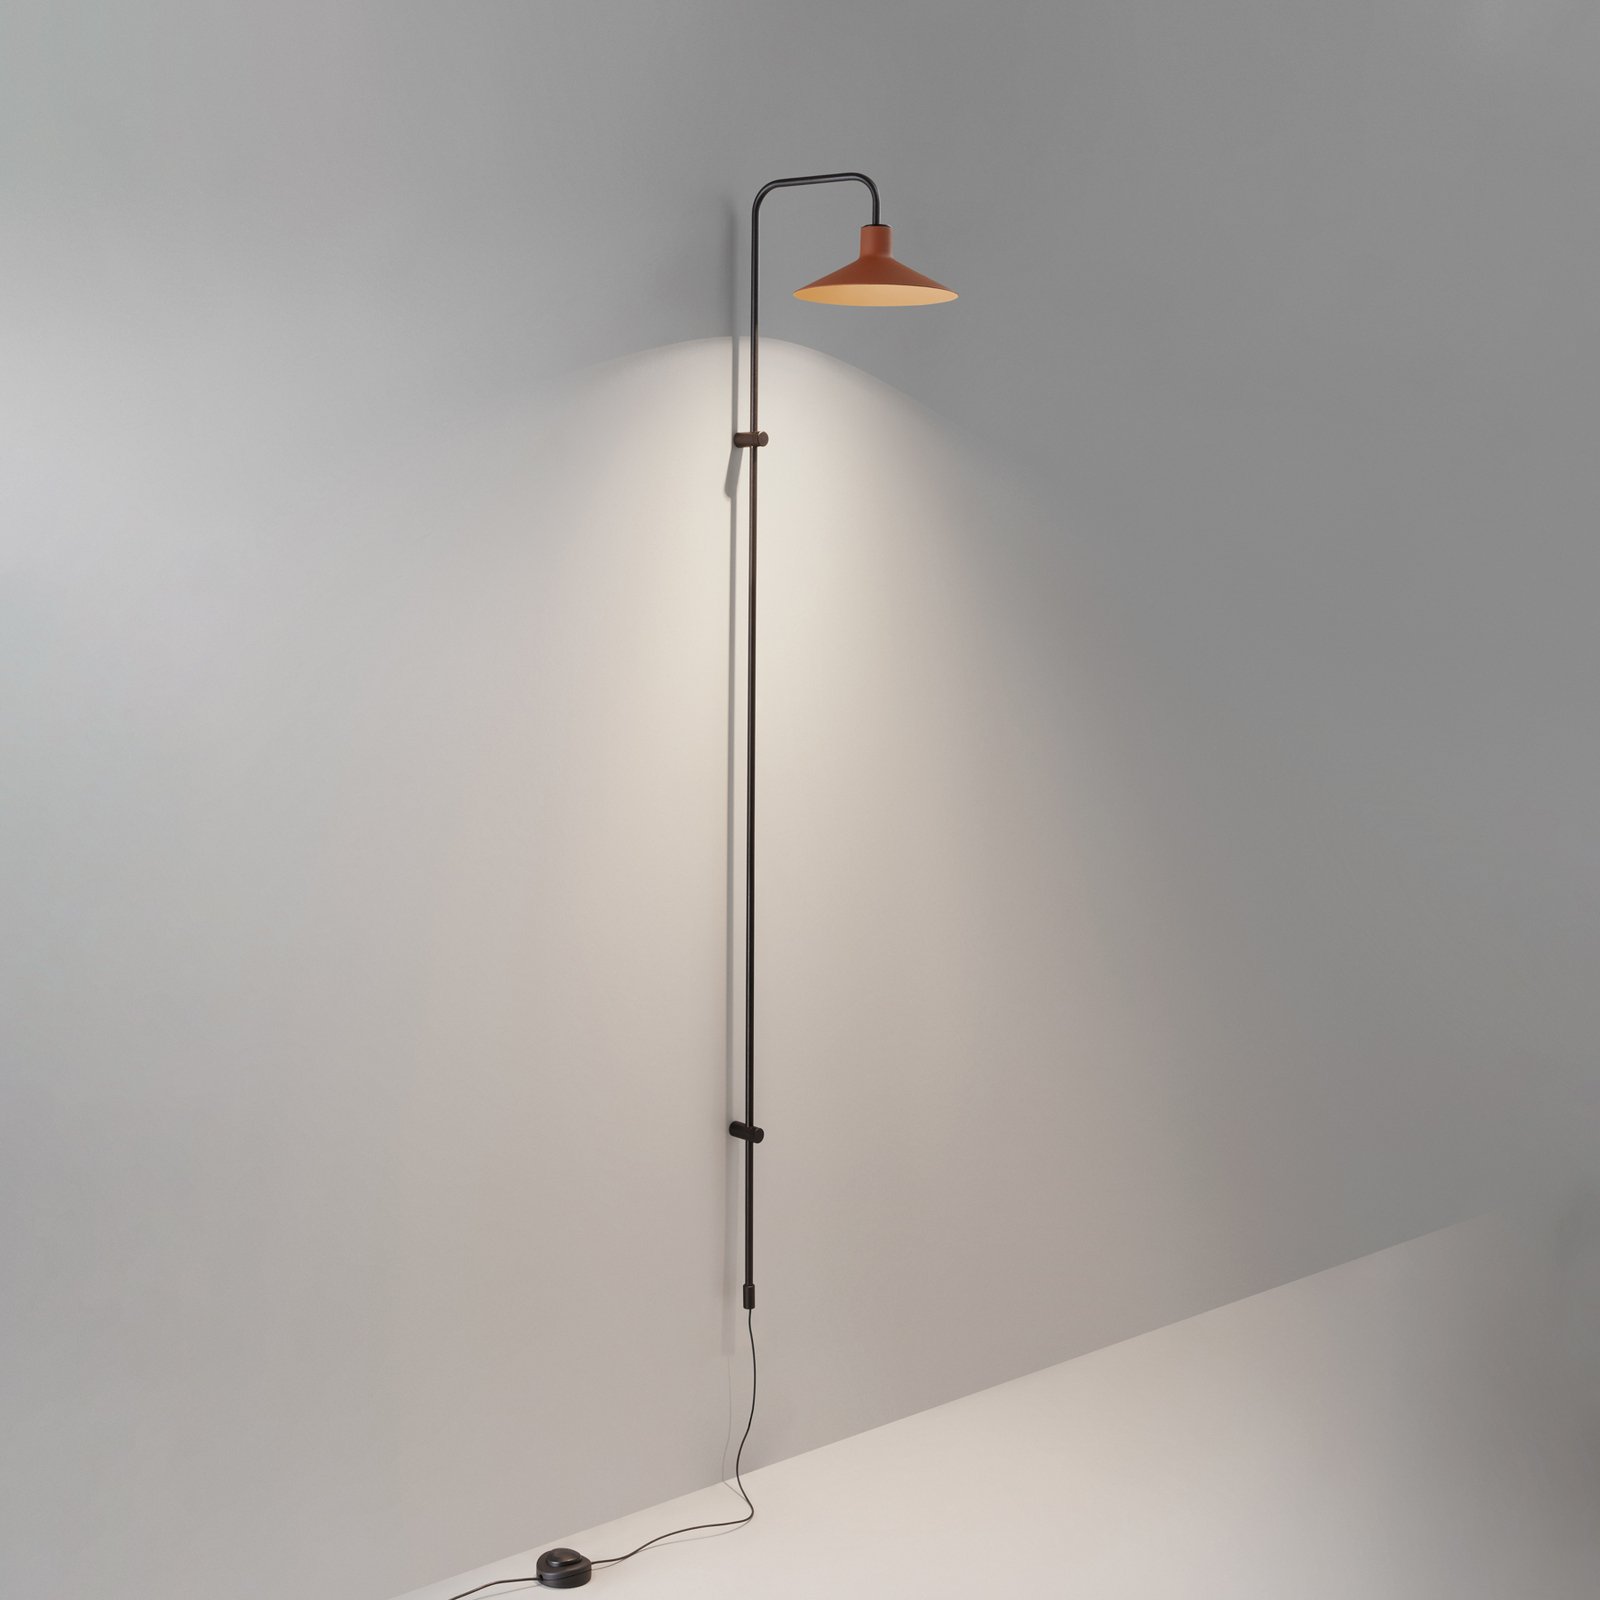 Bover Platet A05 LED-Wandlampe Dimmer, terracotta